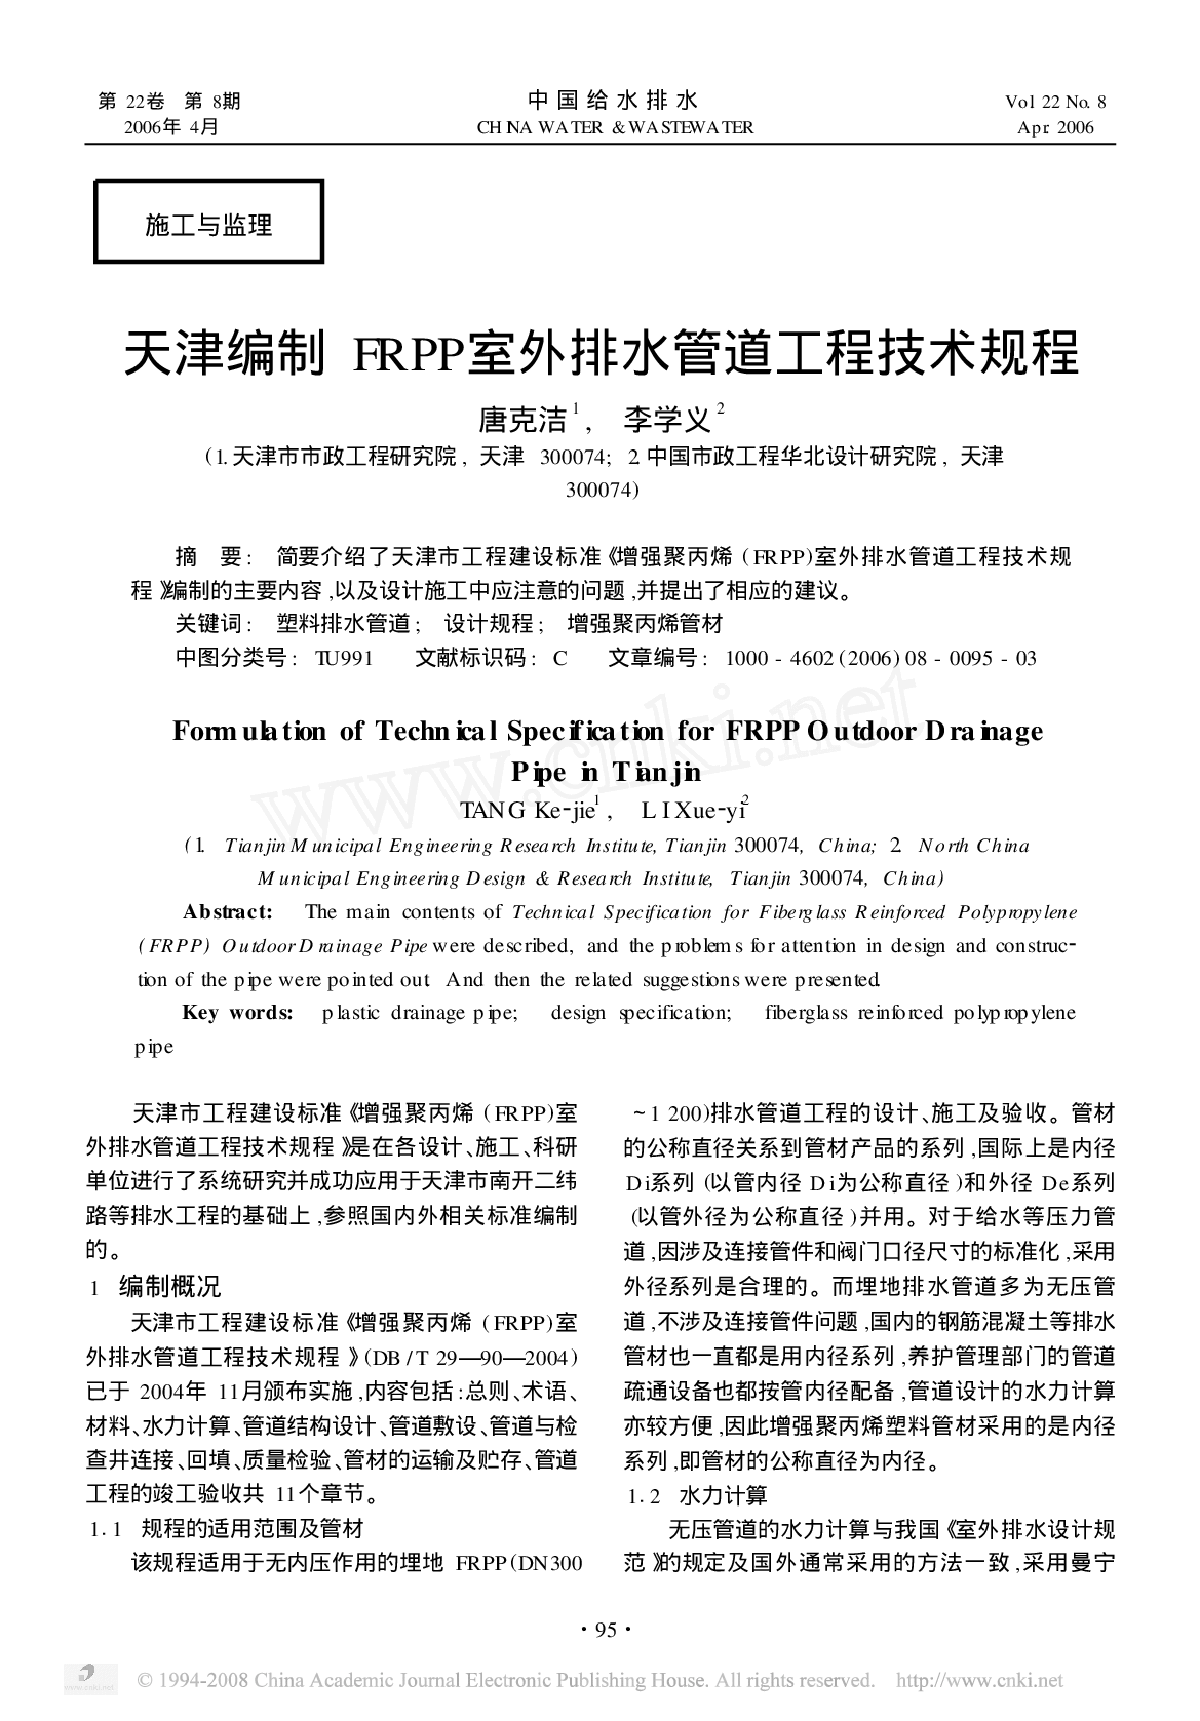 天津编制FRPP室外排水管道工程技术规程